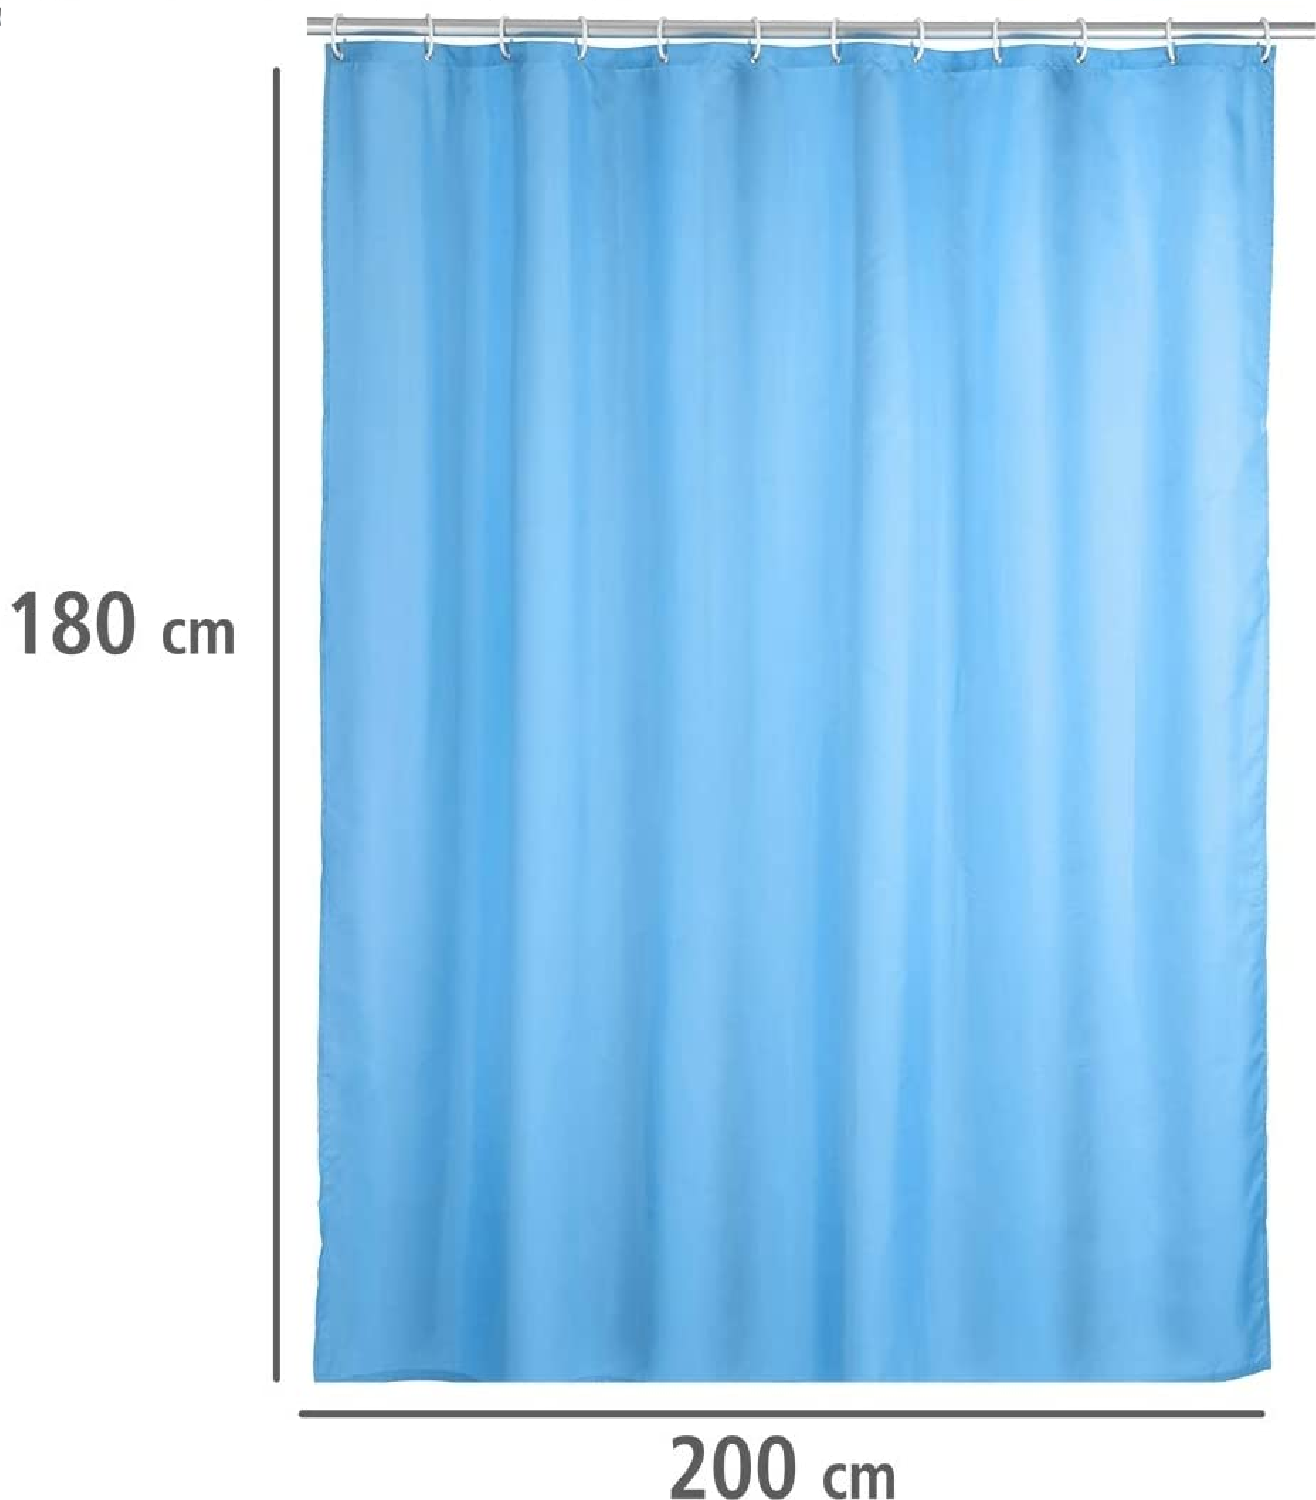 Anti-Schimmel Duschvorhang Uni Light Blue - Anti-Bakteriell, Textil, waschbar, wasserabweisend, schimmelresistent, mit 12 Duschvorhangringen, Polyester, 180 x 200 cm, Hellblau